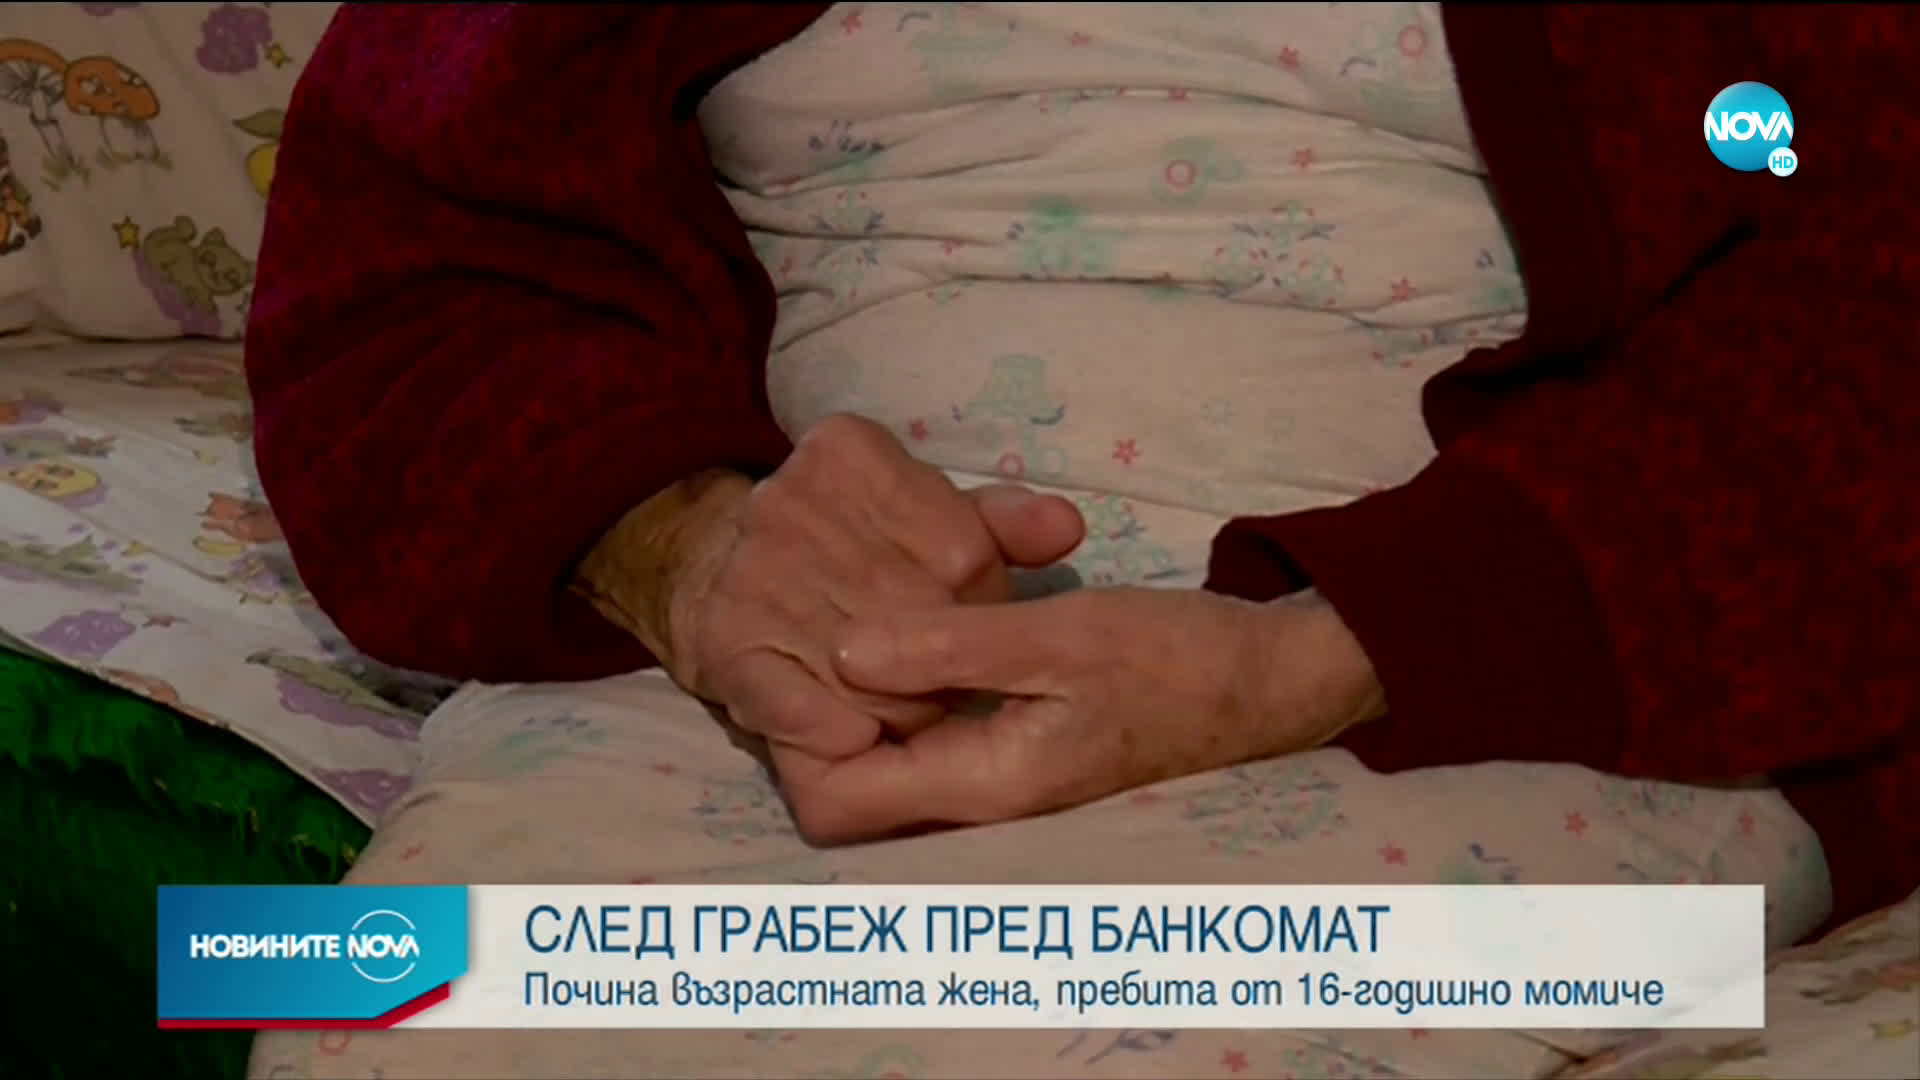 Почина възрастната жена, пребита пред банкомат в София